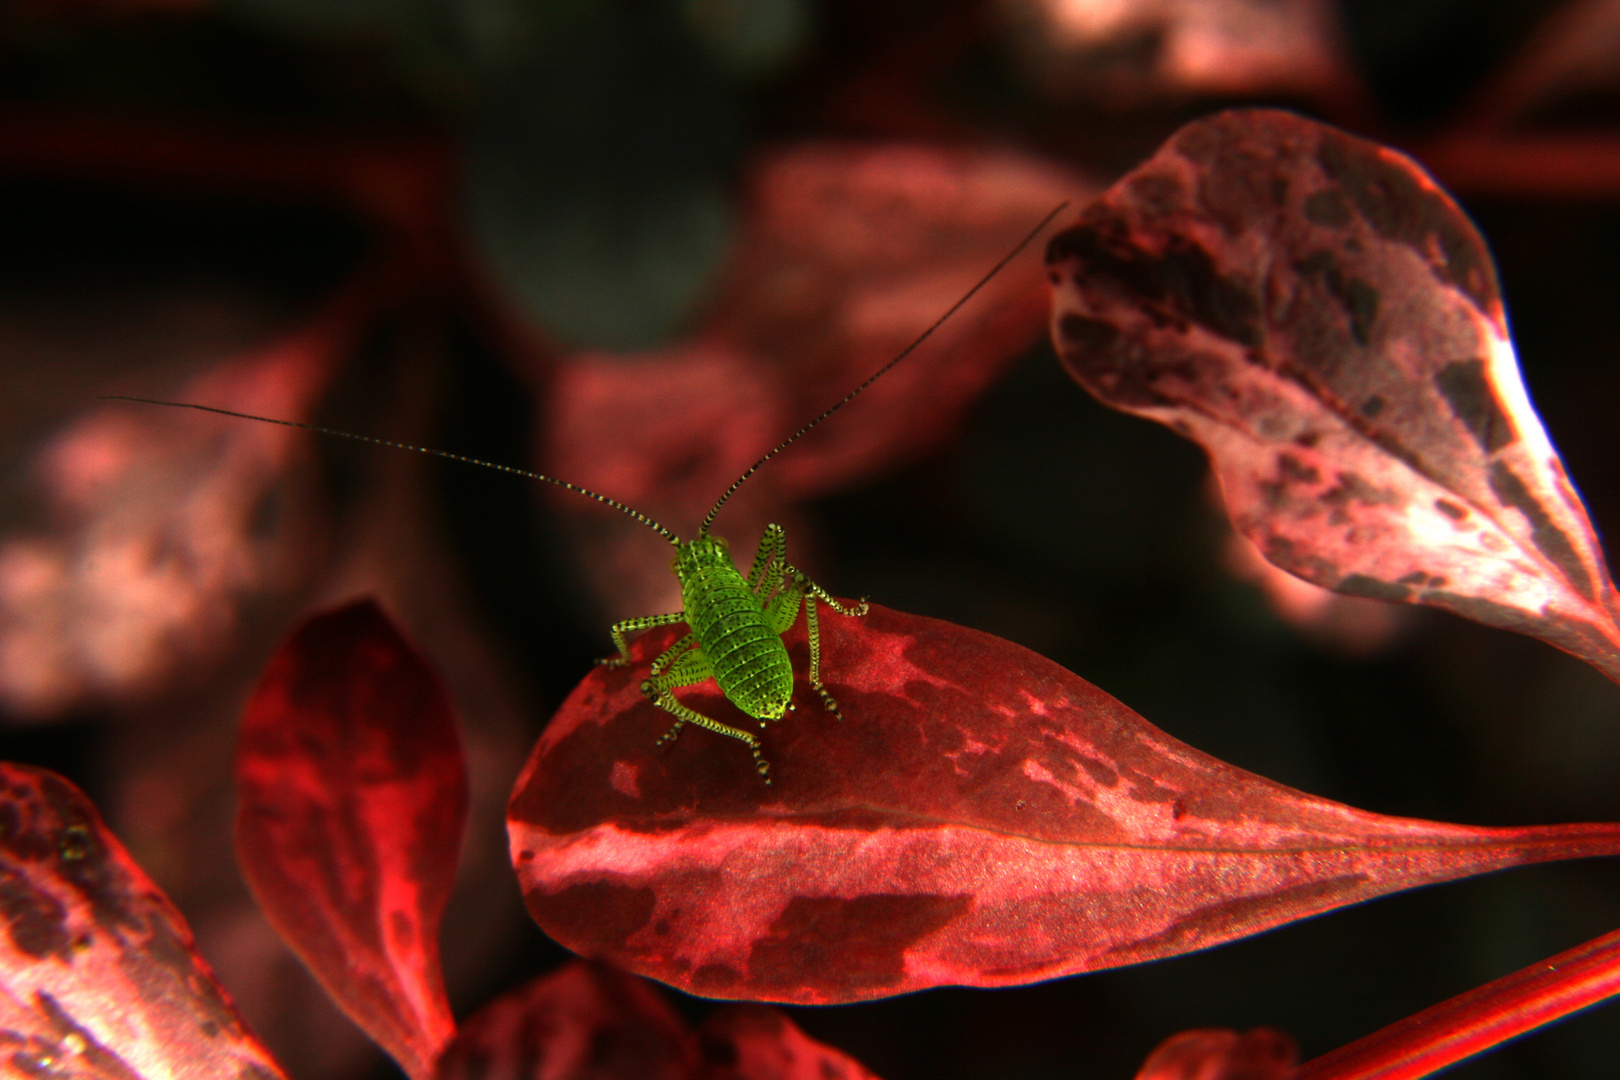 kleine grüne Schrecke auf roter Pflanze